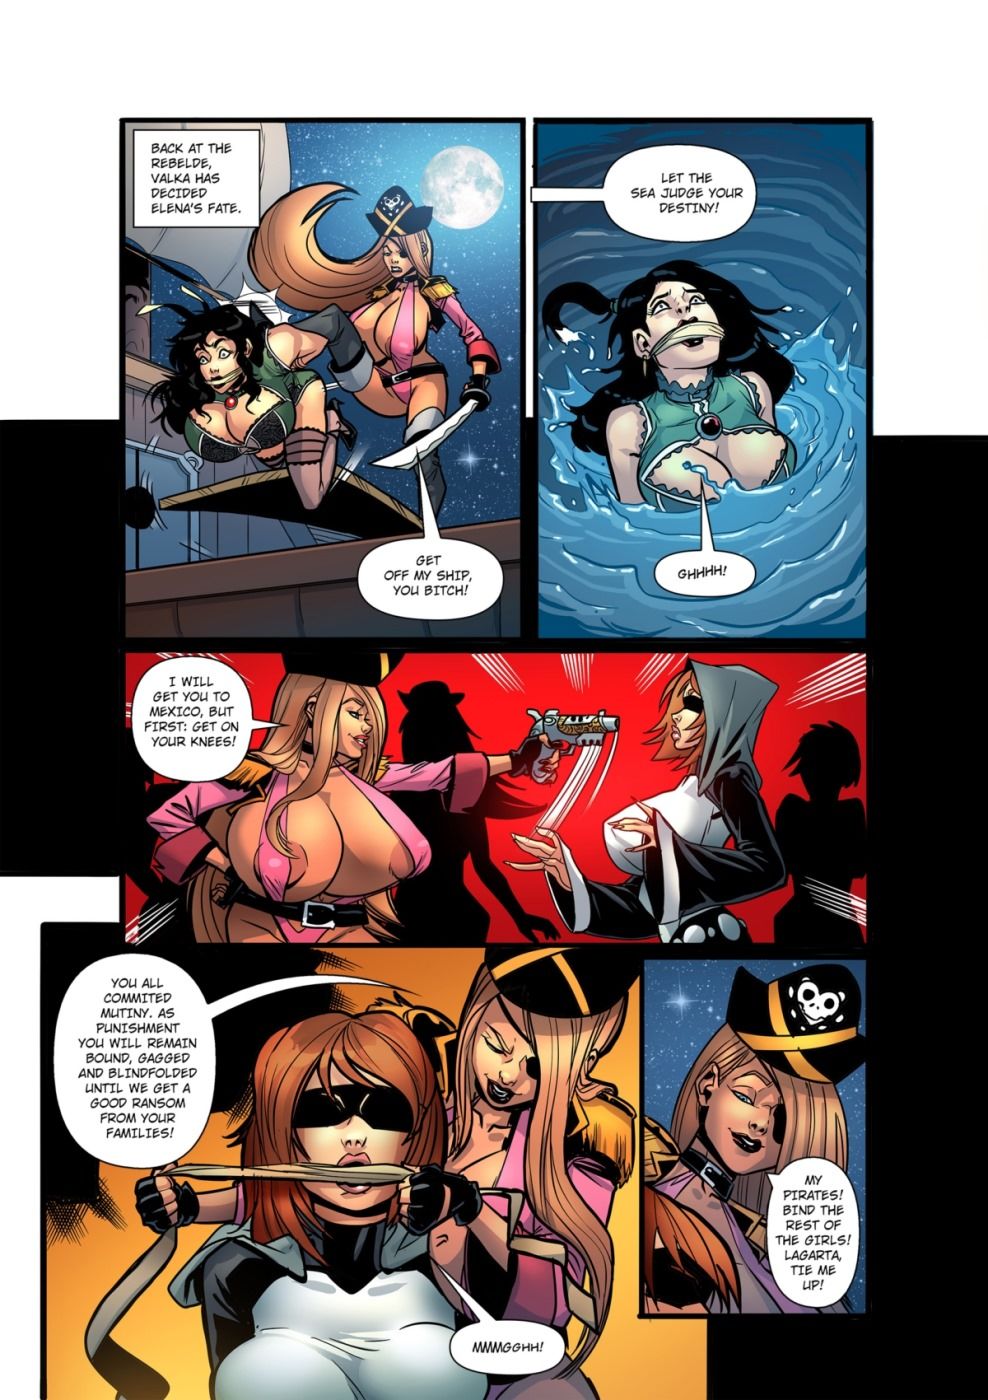 Bdsm Fan pirate page 1